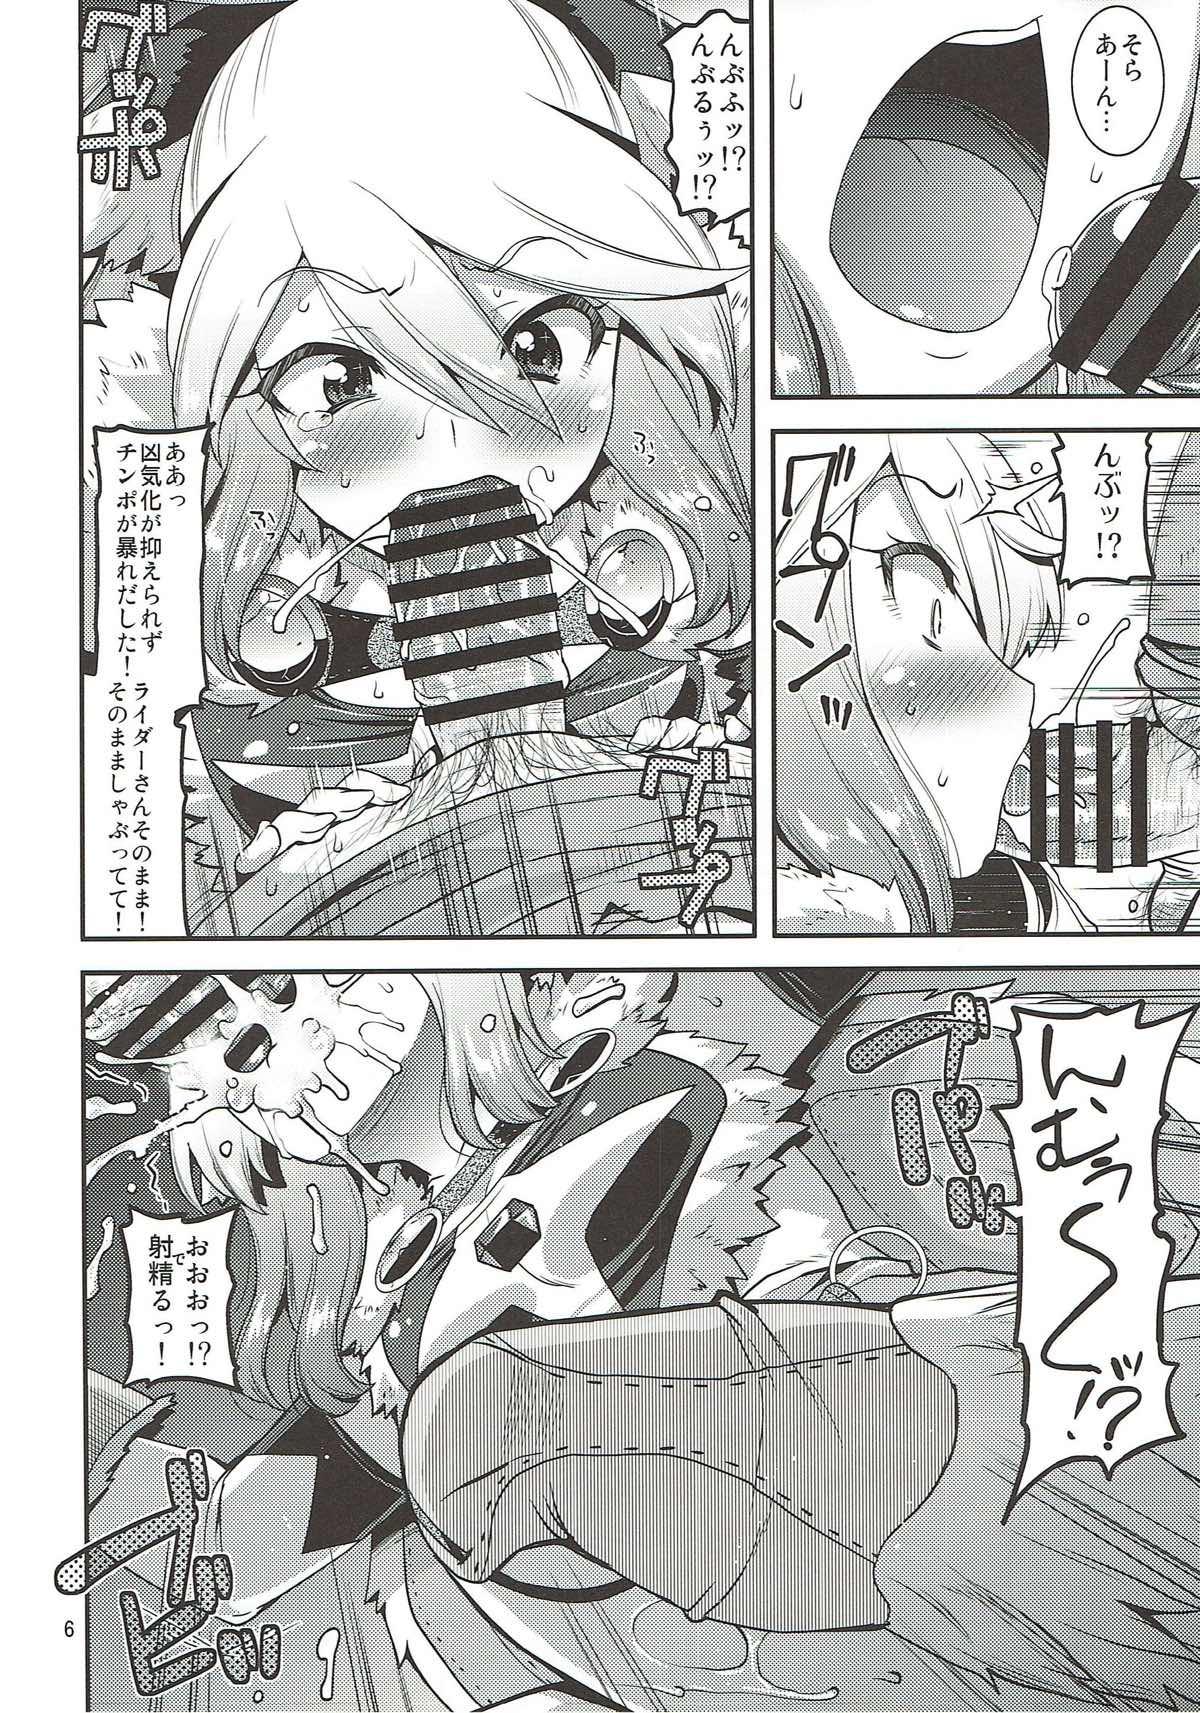 8teenxxx Muku na Inaka Musume ga Ojisan no Jouka ni Hamaru made - Monster hunter The - Page 5